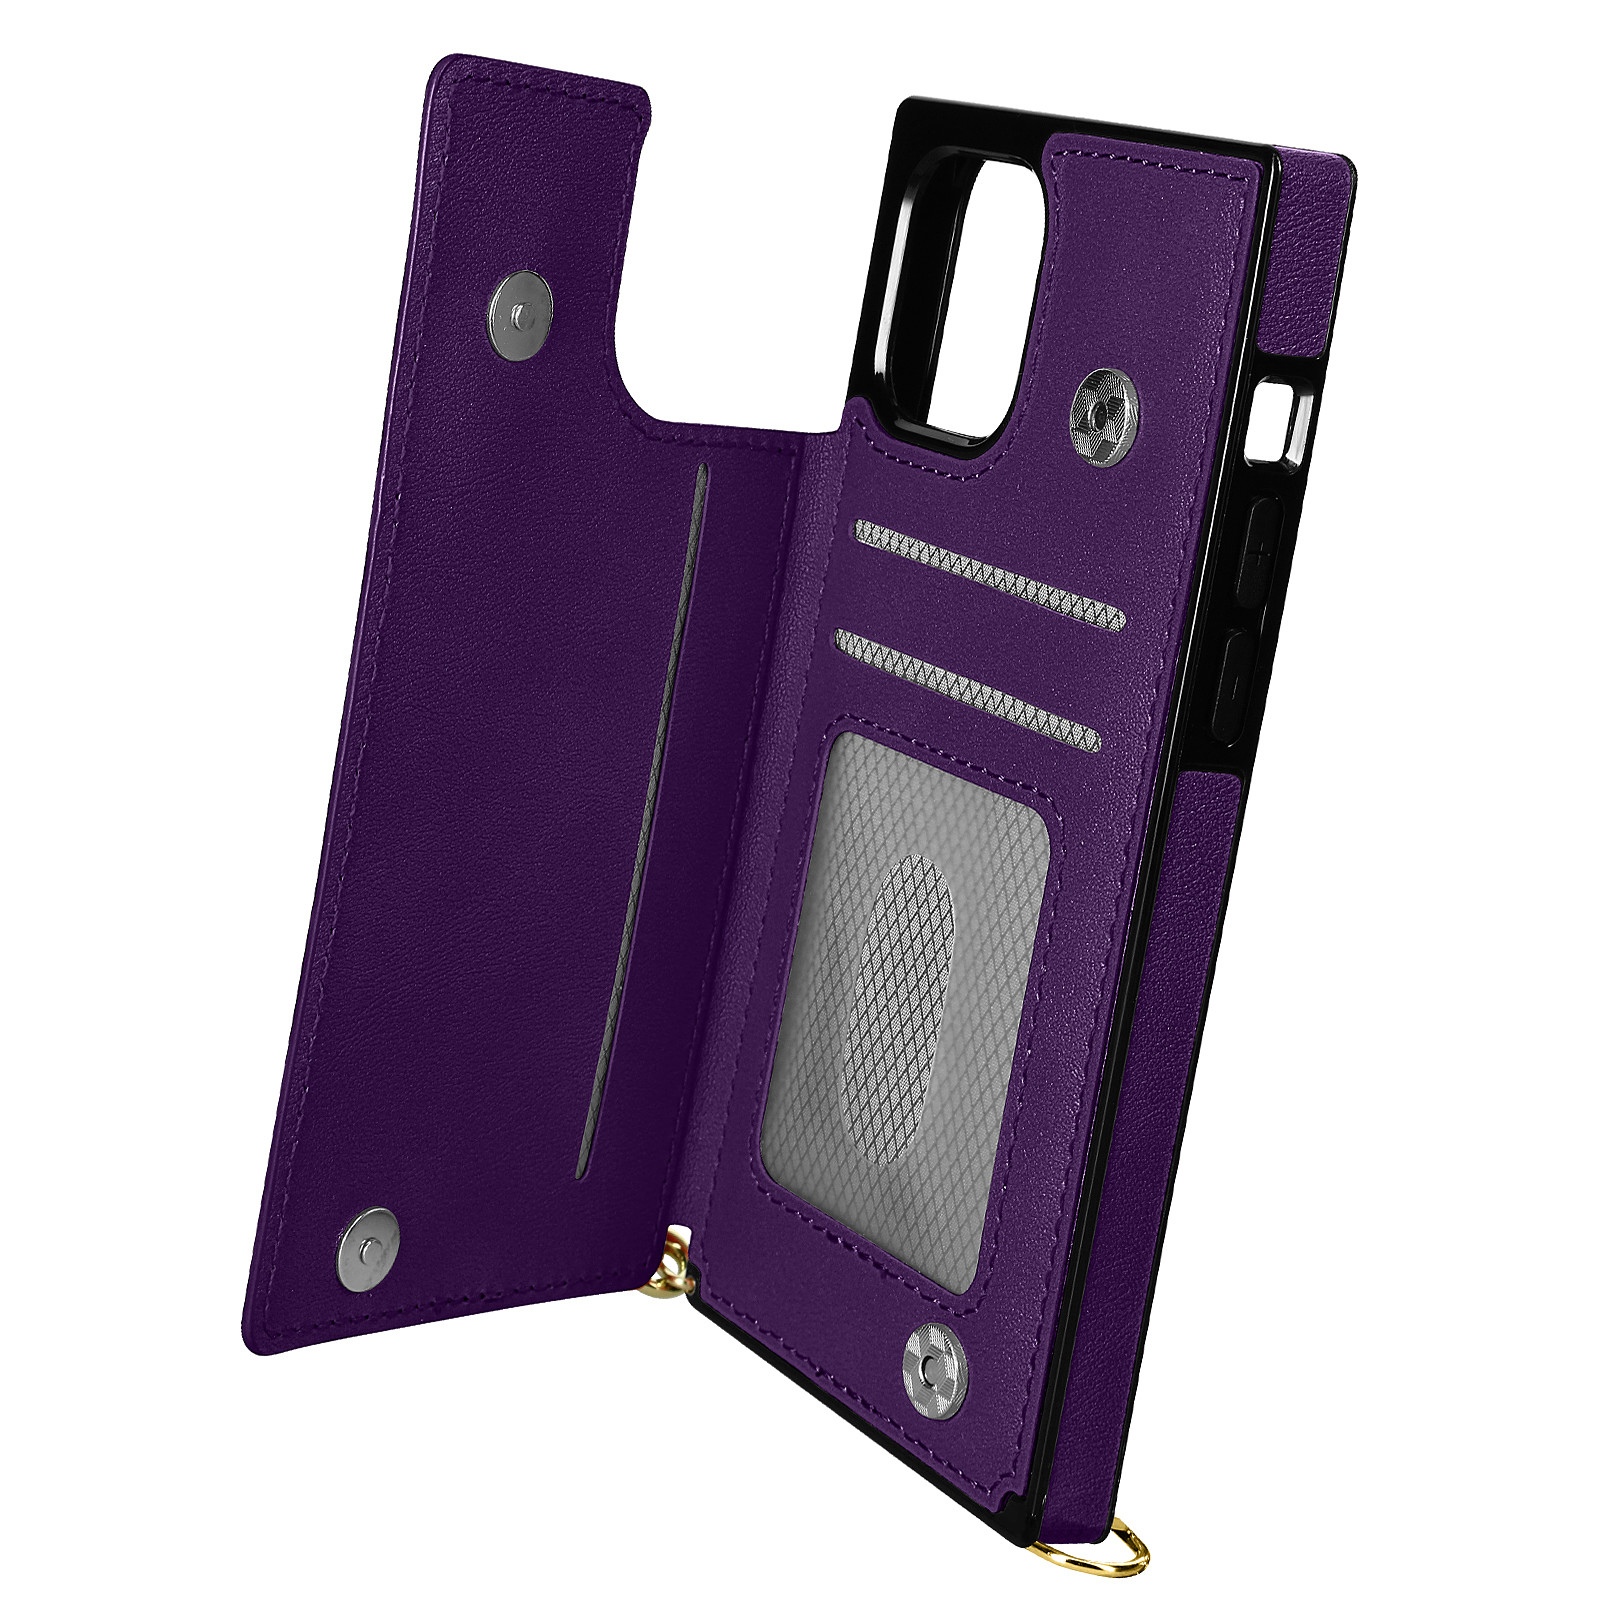 Avizar Coque Cordon pour iPhone 11 Pro avec Porte-cartes Support Video Lanière violet fonce - Coque telephone Avizar